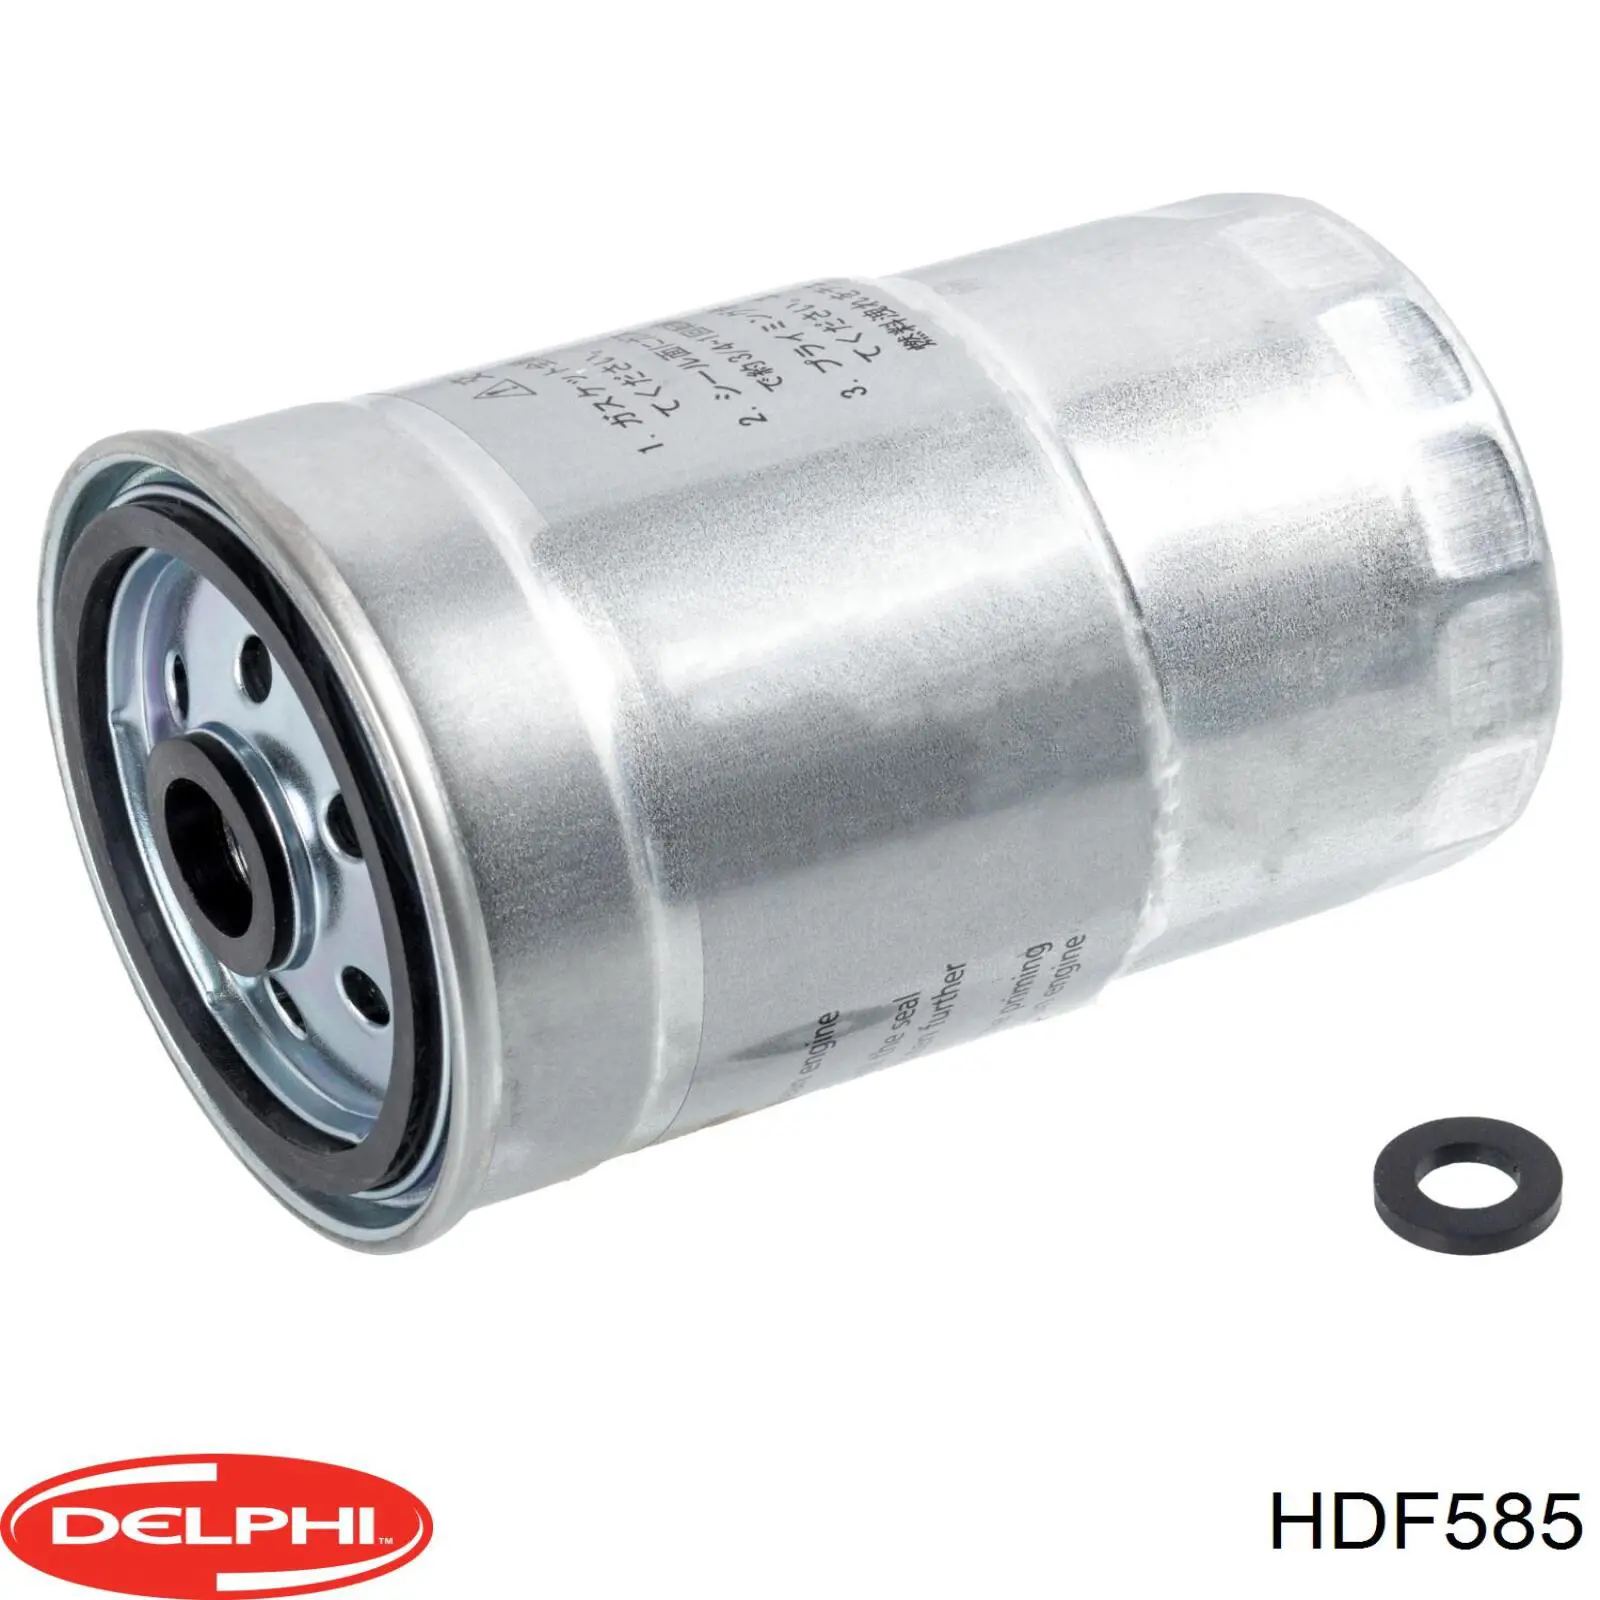 HDF585 Delphi filtro combustible